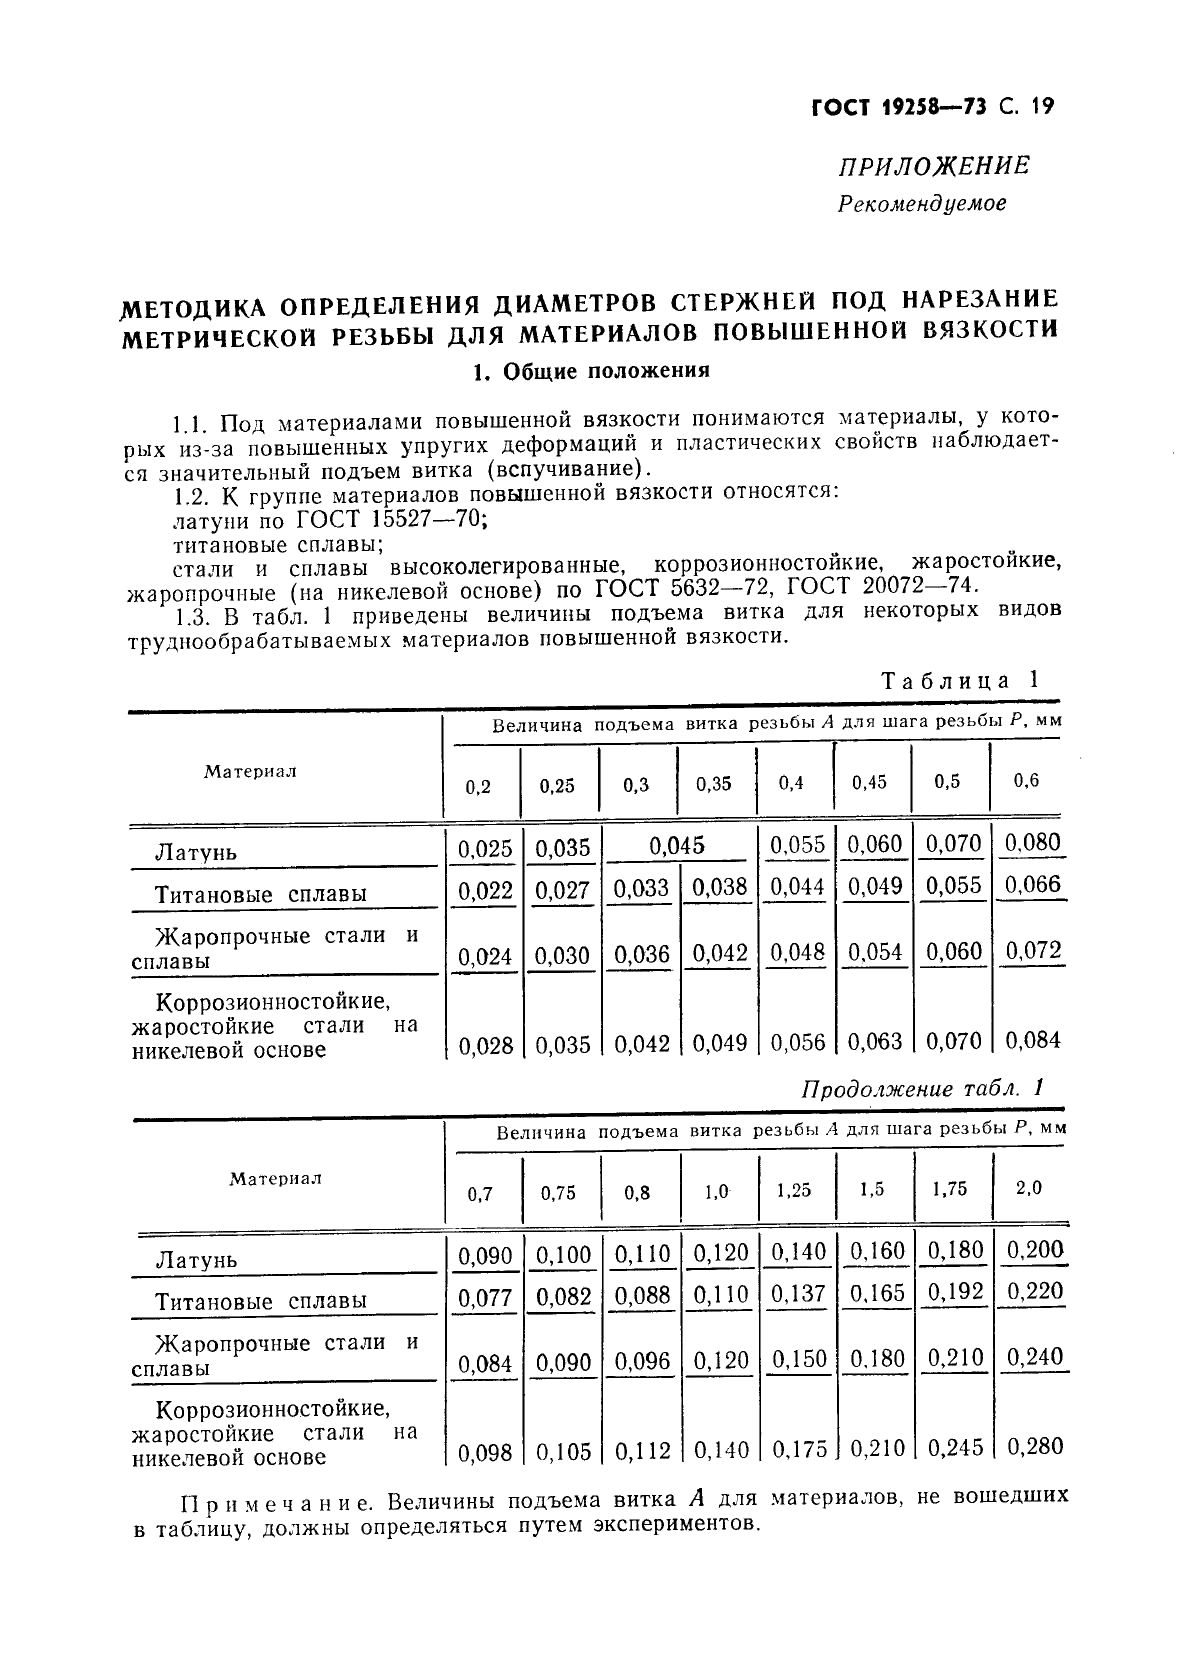 ГОСТ 19258-73 Стержни под нарезание метрической резьбы. Диаметры (фото 21 из 28)